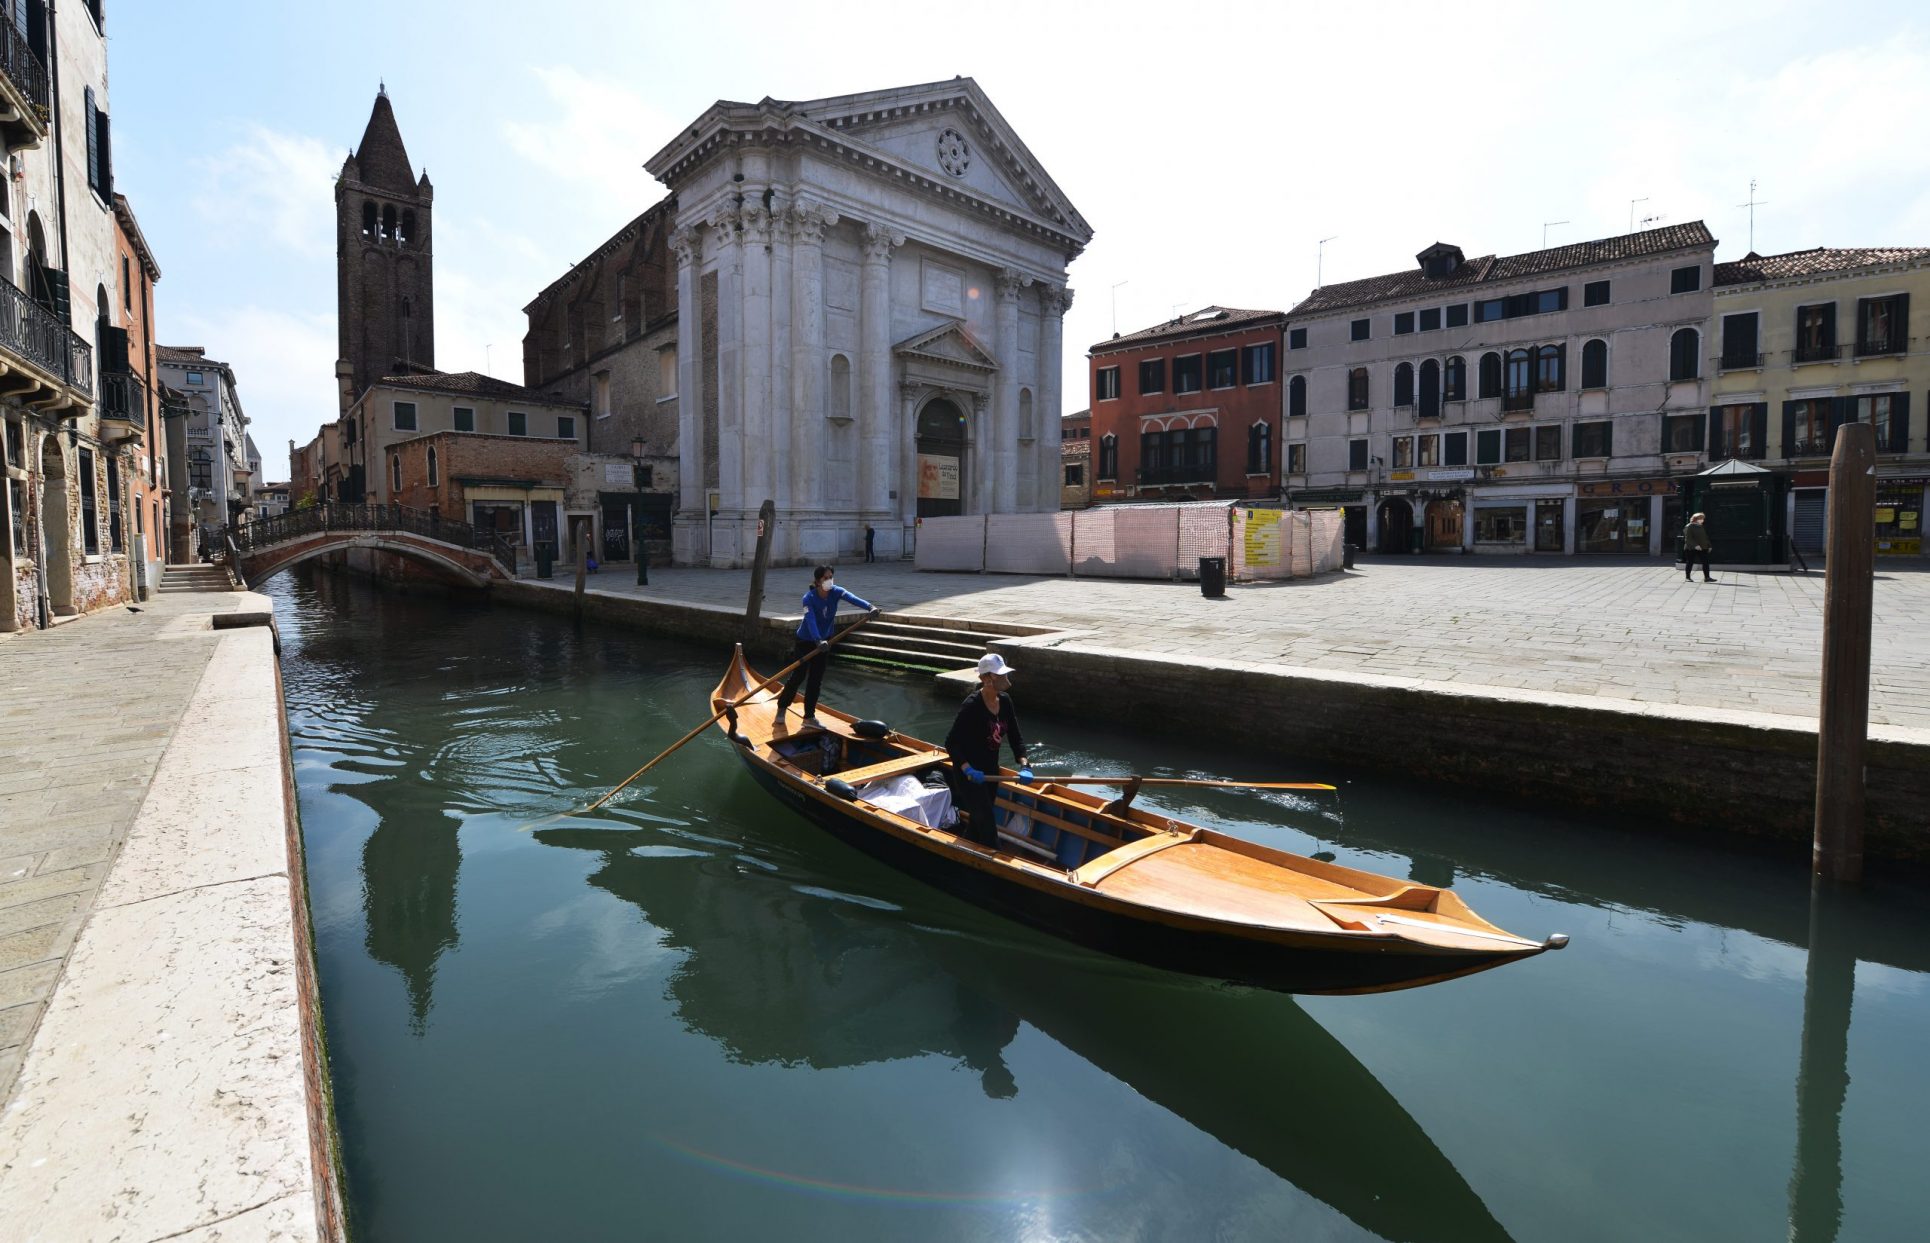 ¡Impactante! Dos imágenes satelitales muestran el impacto del coronavirus en las vías fluviales de Venecia